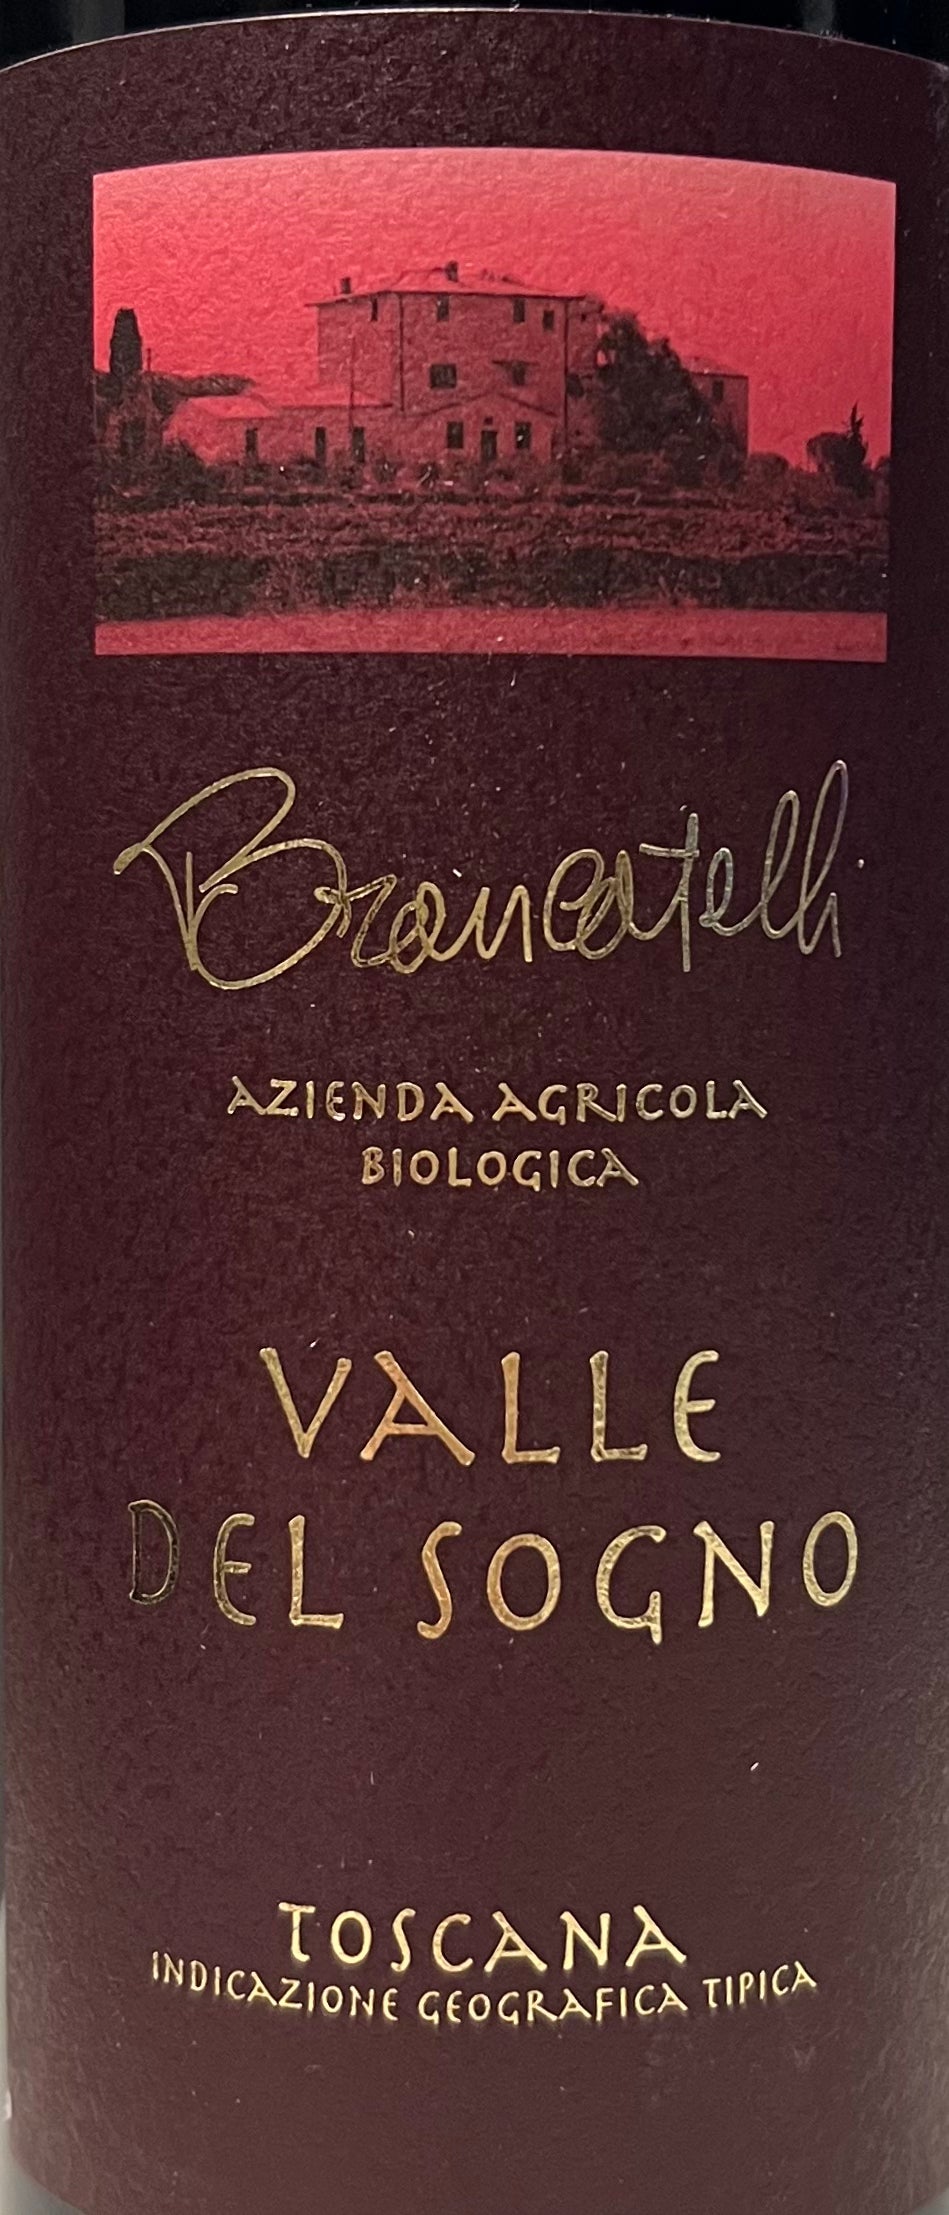 Brancatelli 'Valle del Sogno' - Toscana